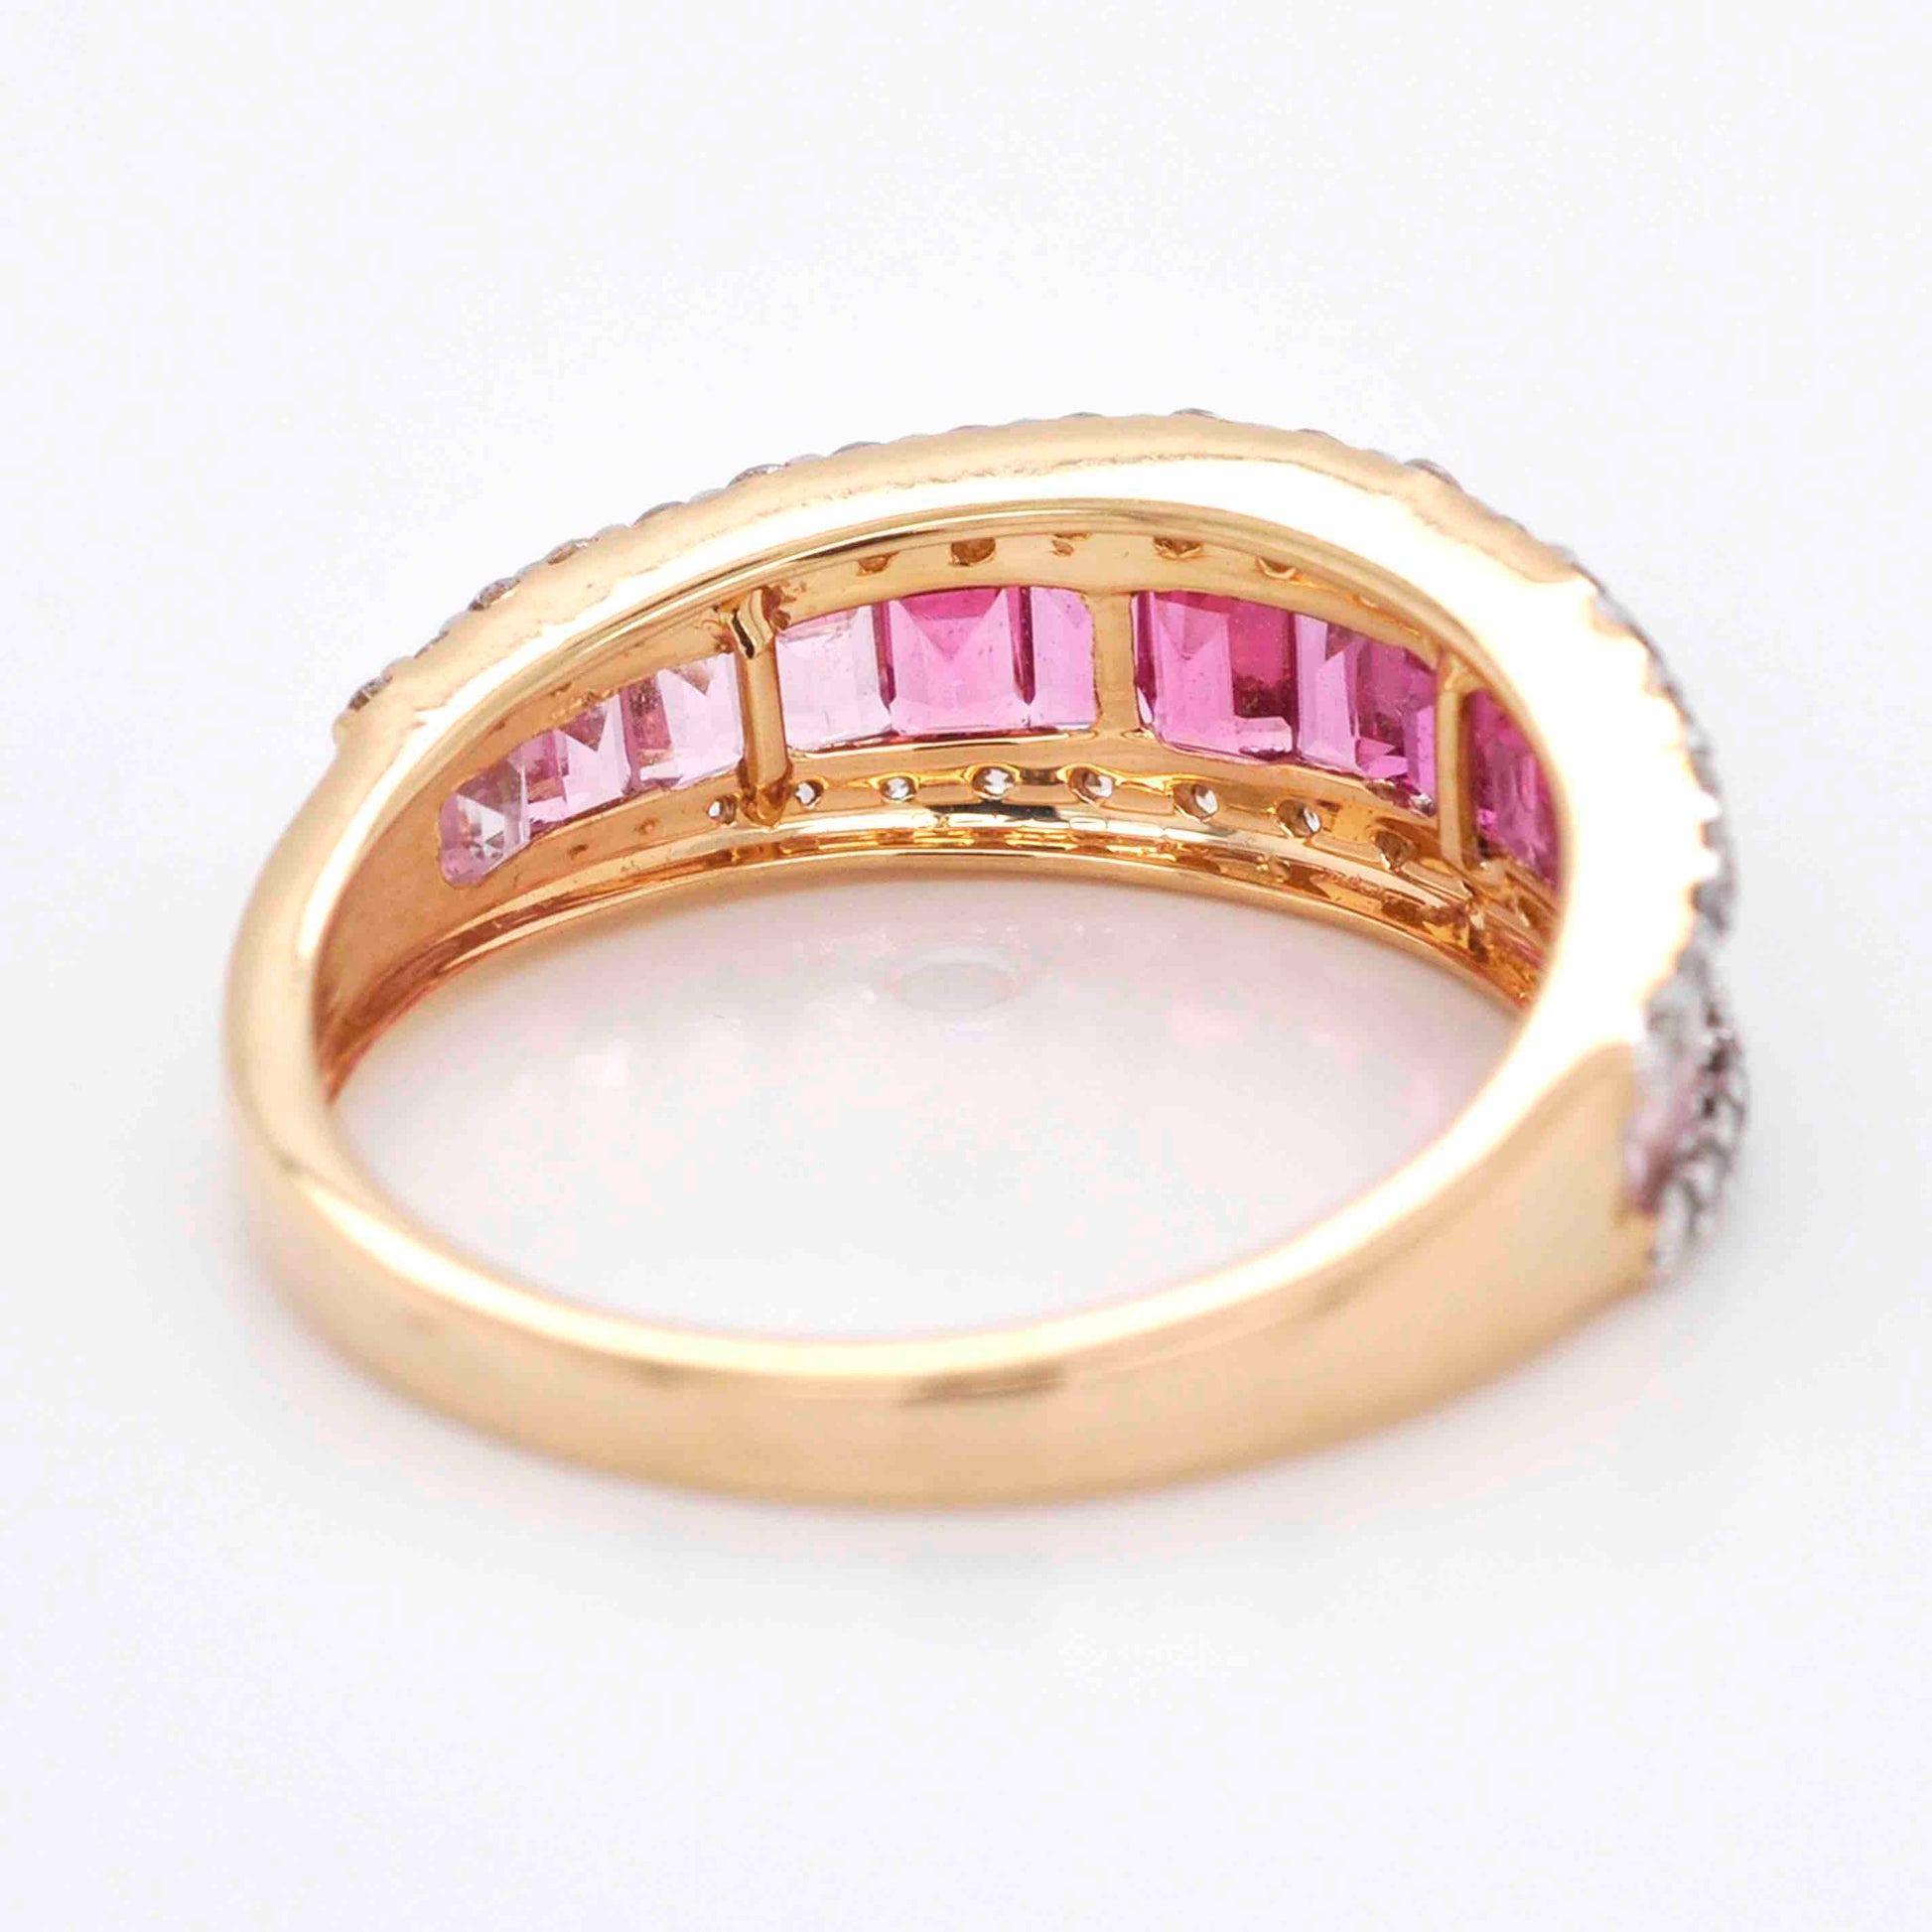 Unique baguette diamond gradient ring